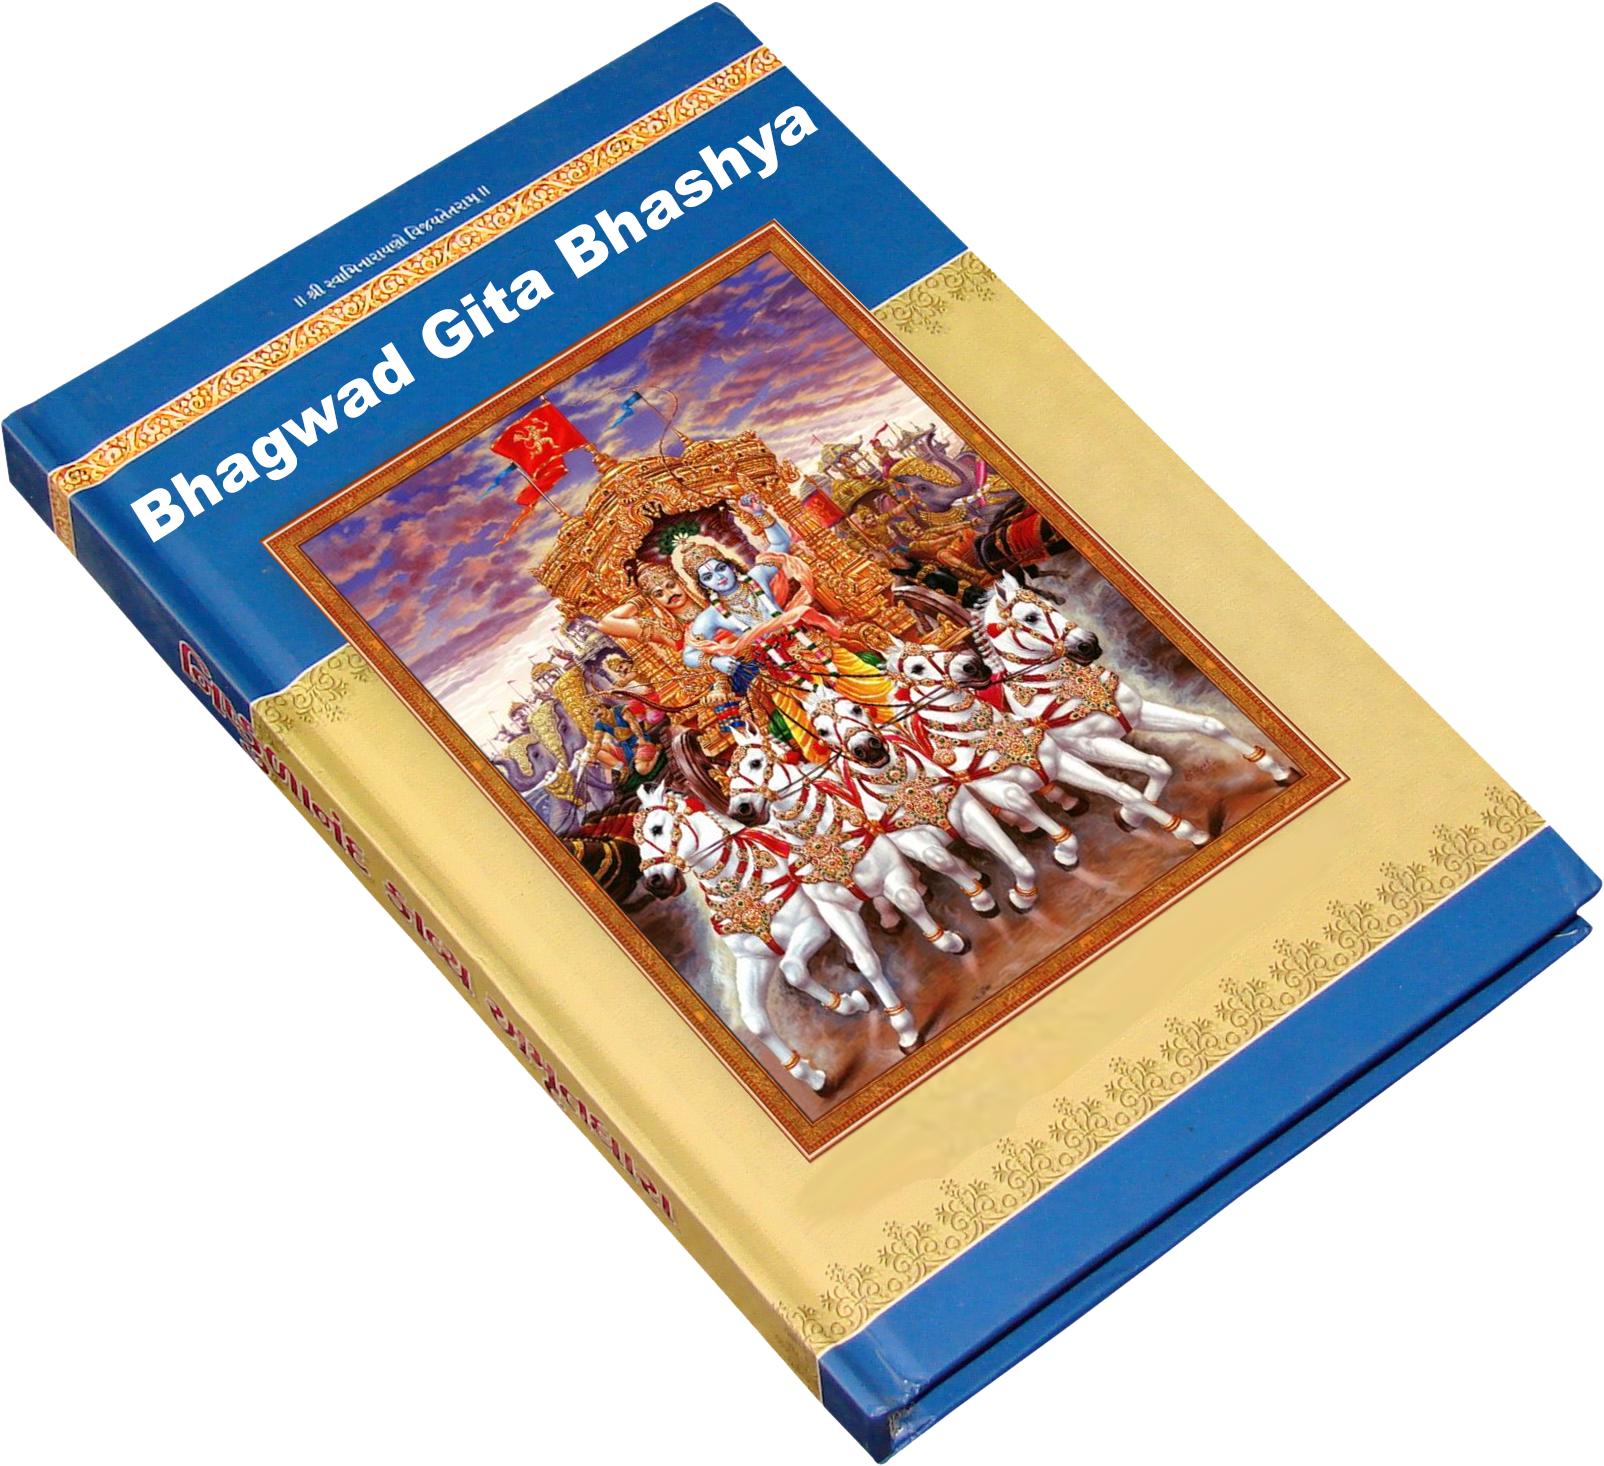 Cover of Bhagwad Gita Bhashya